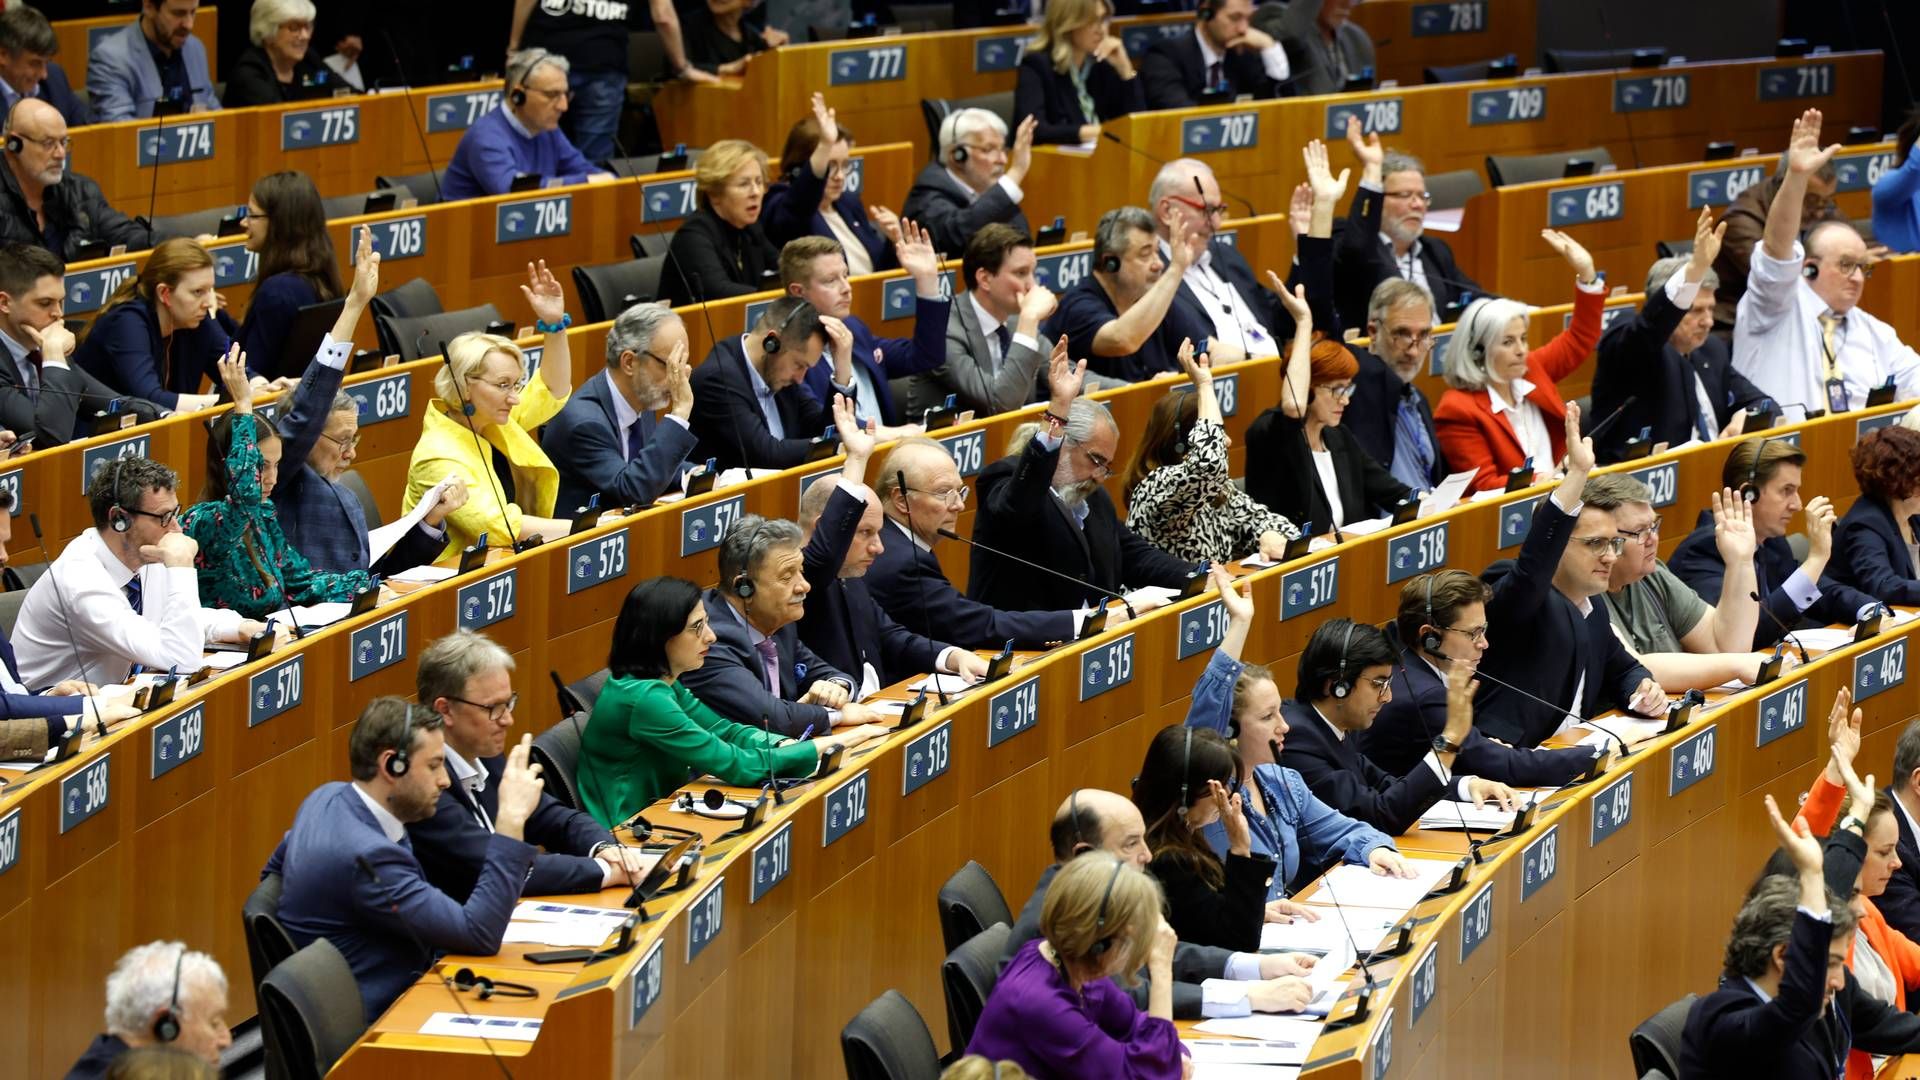 STEMTE FOR: EU-parlamentet støtter ny legemiddellov. Her fra et plenumsmøte i Brussel der det ble stemt over EUs migrasjonslovgivning. | Foto: AP Photo/Geert Vanden Wijngaert